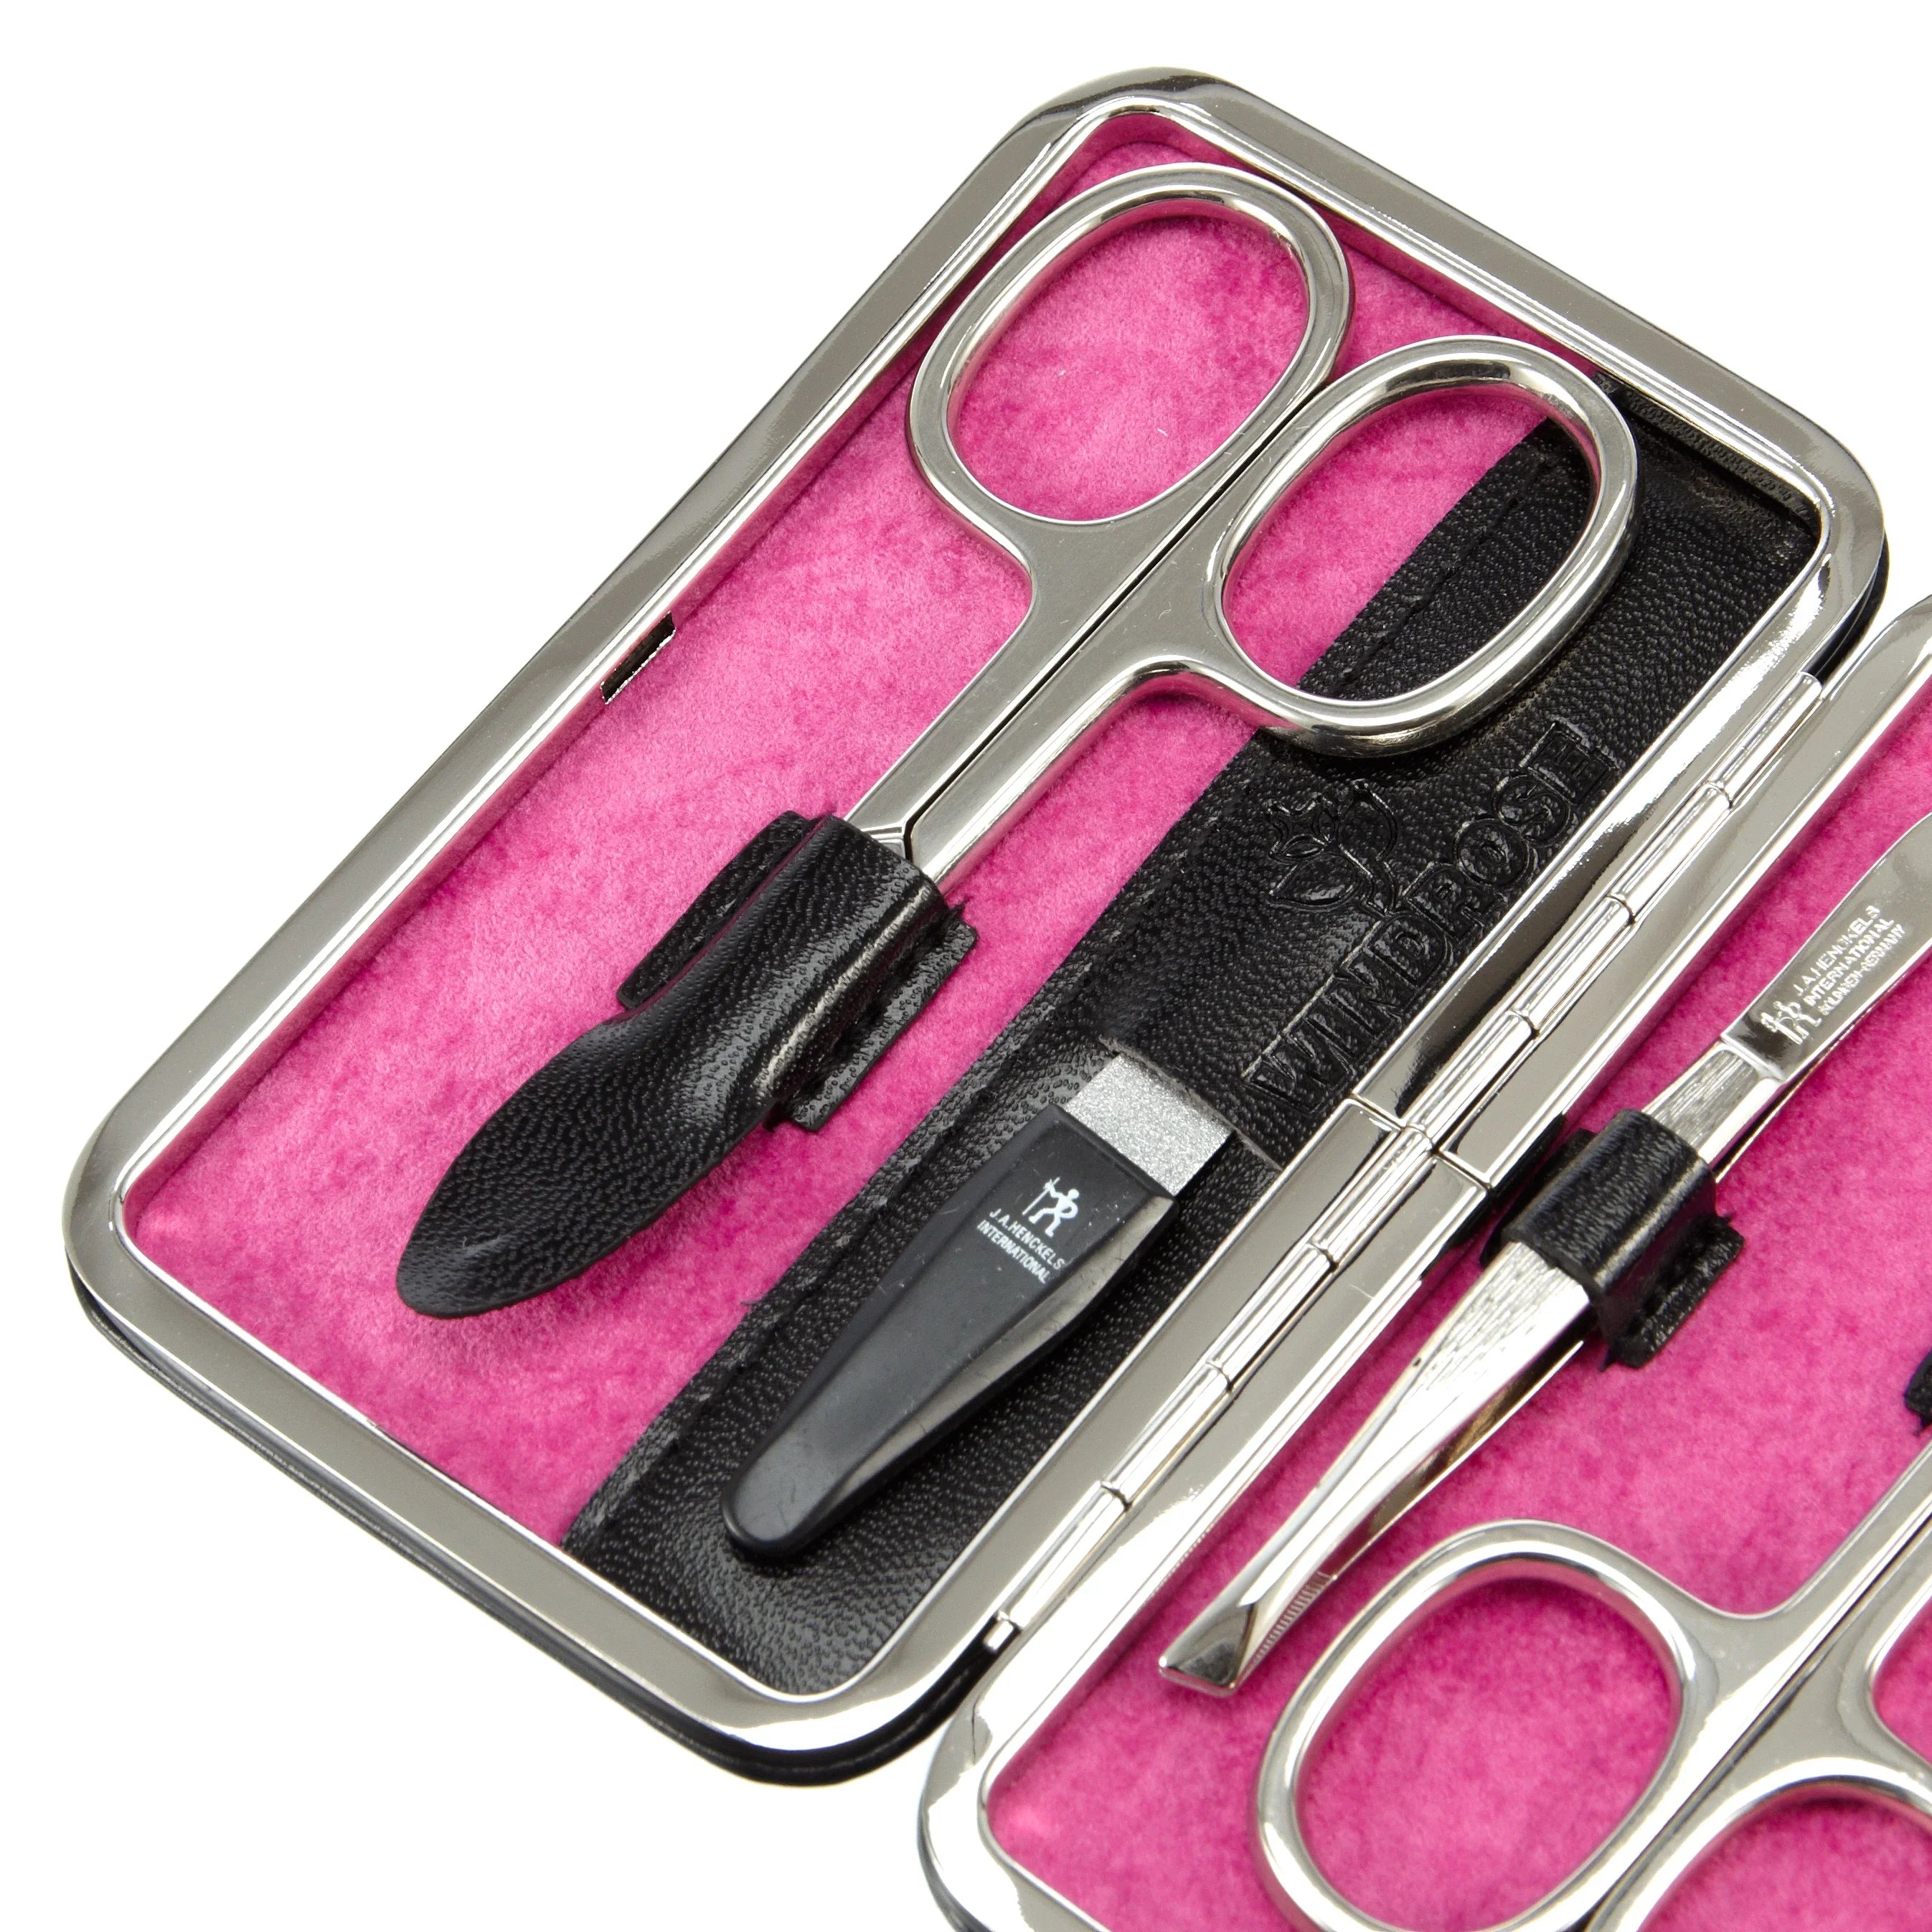 Windrose Merino Manicure ironing case 11 cm - black